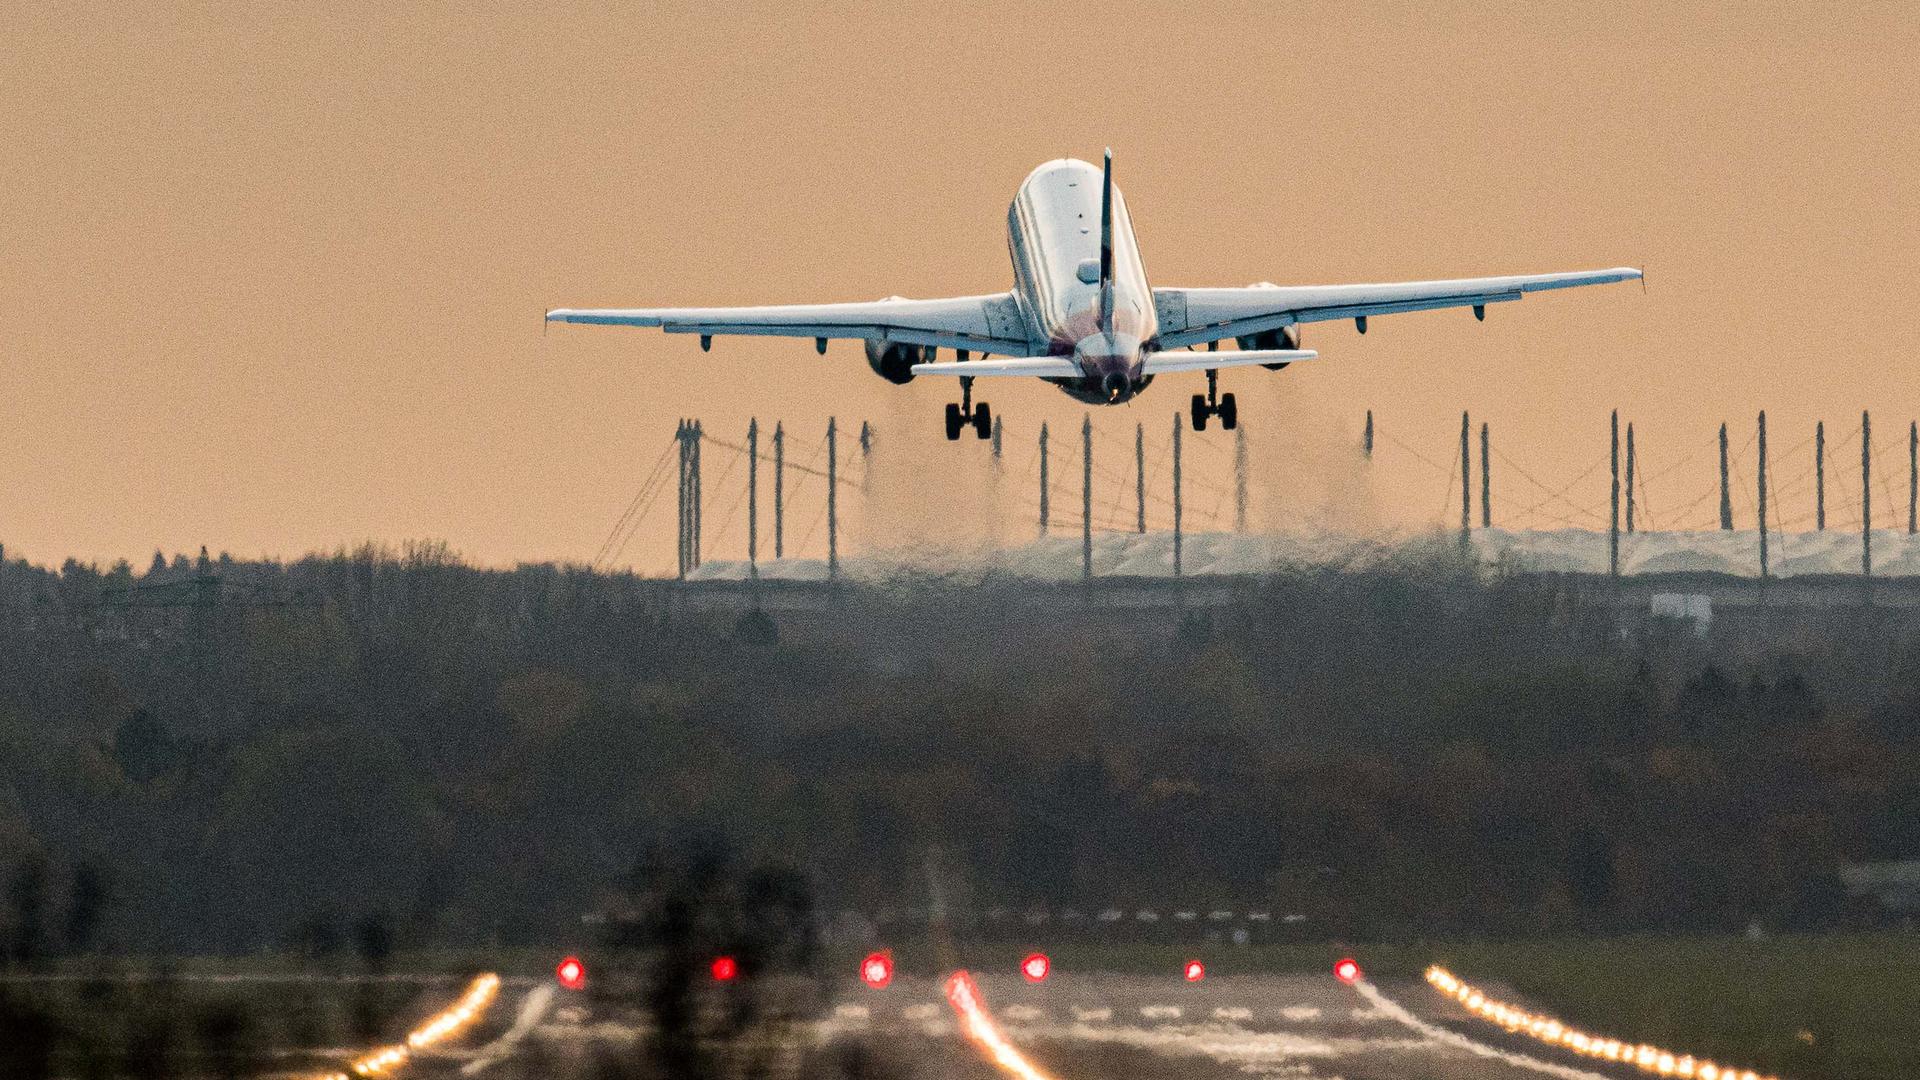 ARCHIV - 13.11.2020, Hamburg: Ein Airbus startet vom Hamburg Airport. (zu dpa "Airlineverband: Problem mit renitenten Passagieren wächst") Foto: Daniel Reinhardt/dpa +++ dpa-Bildfunk +++